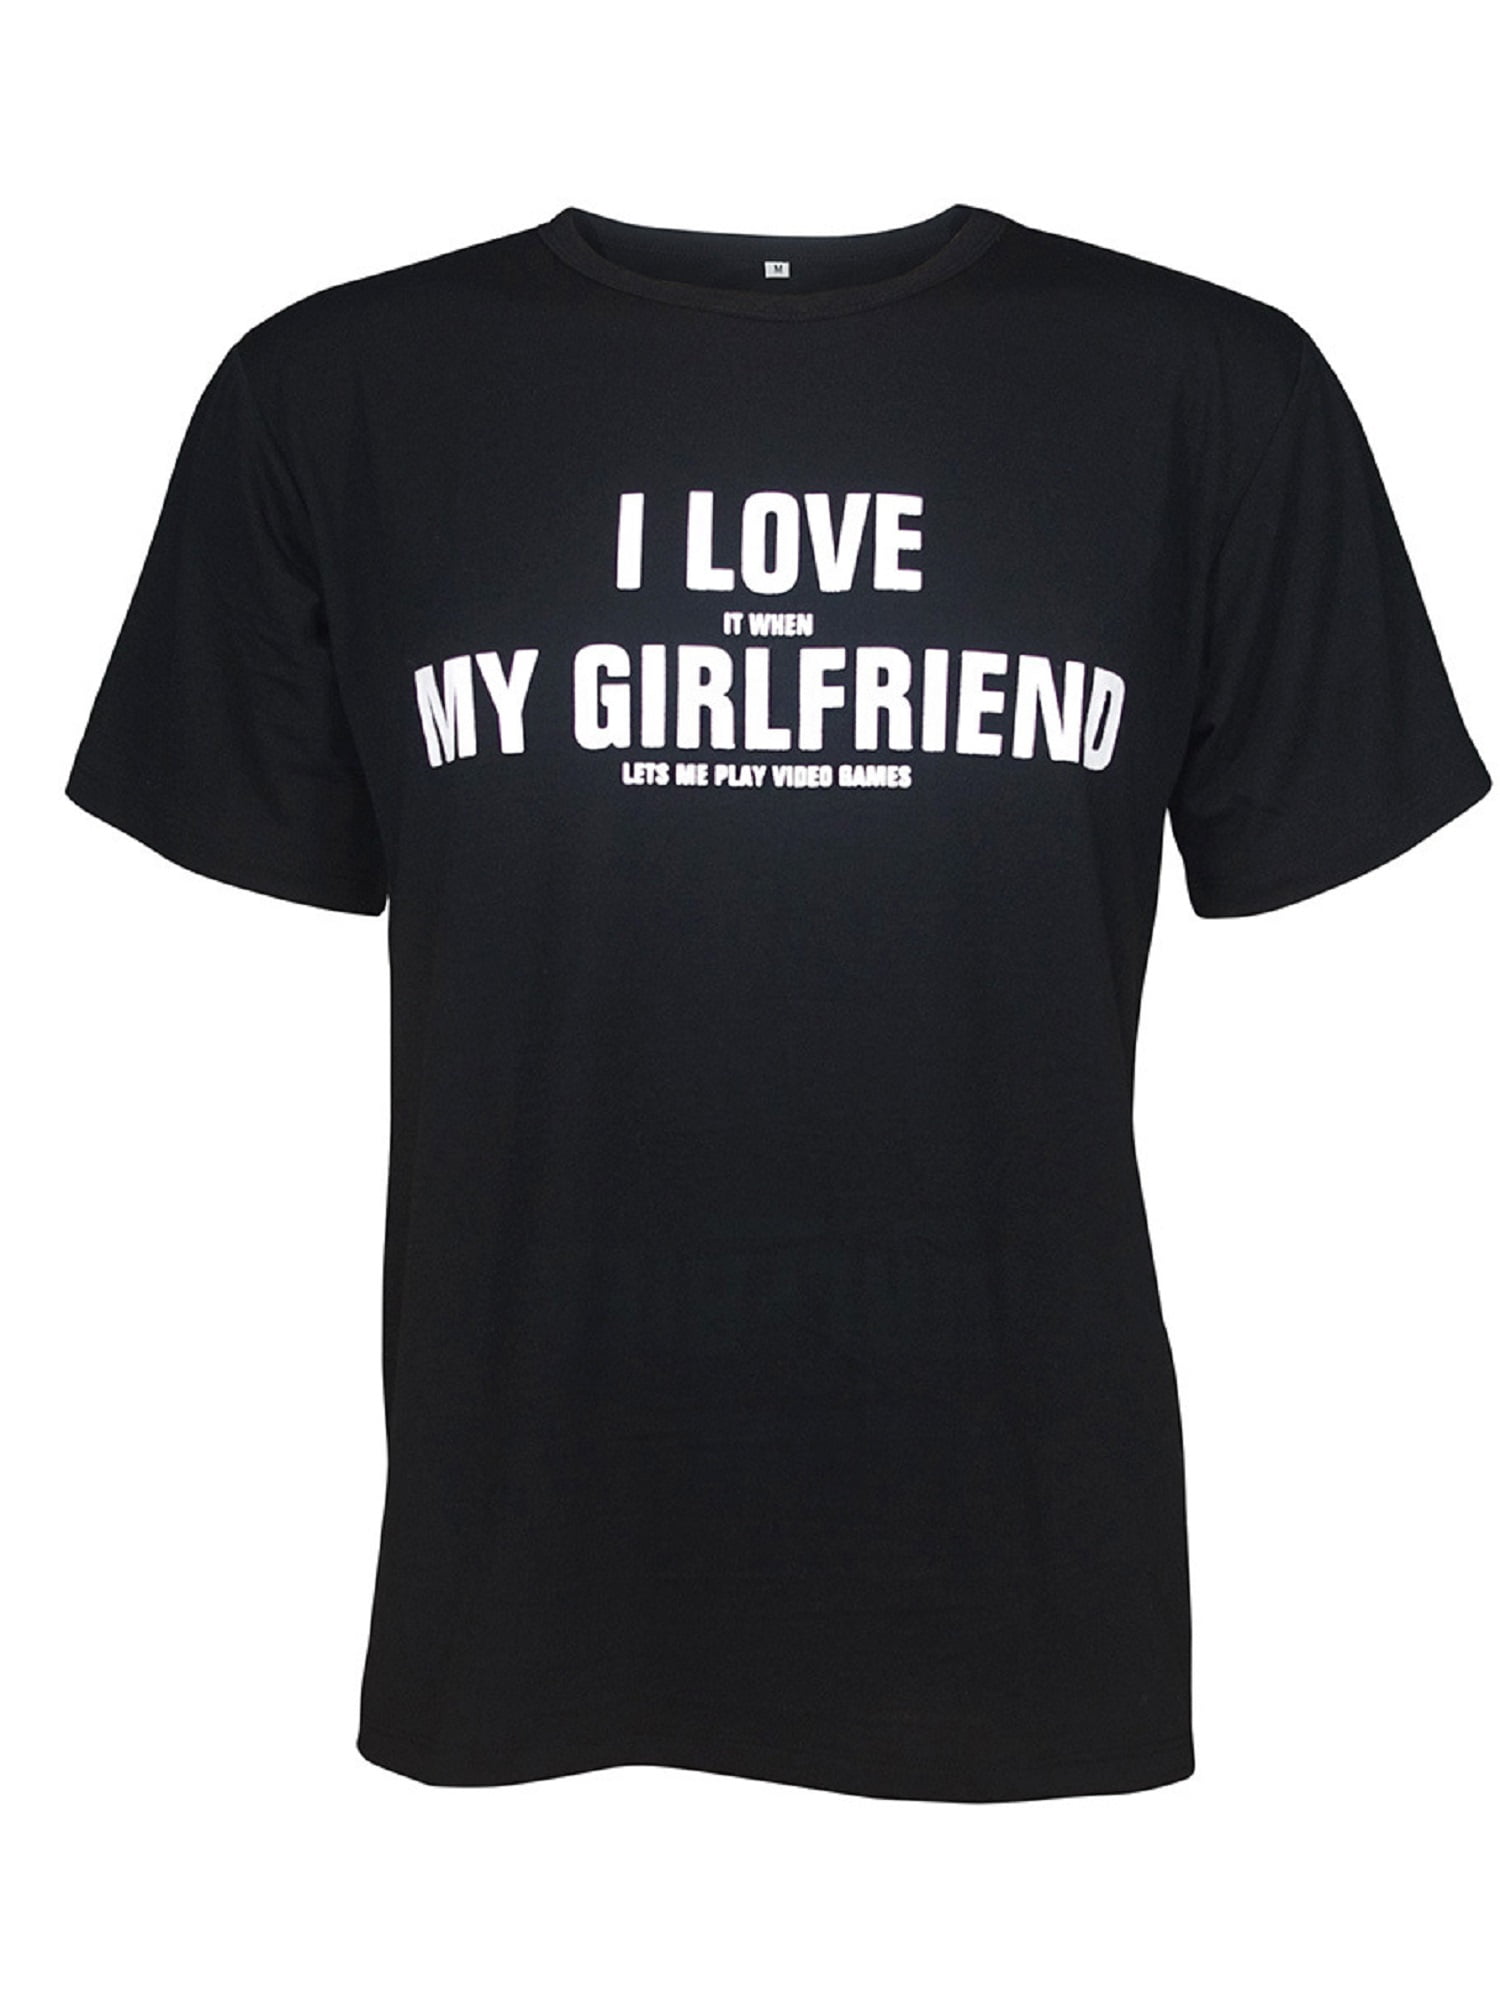 World's Cutest Girlfriend Ever Period Short-Sleeve Novelty Gift T-Shirt